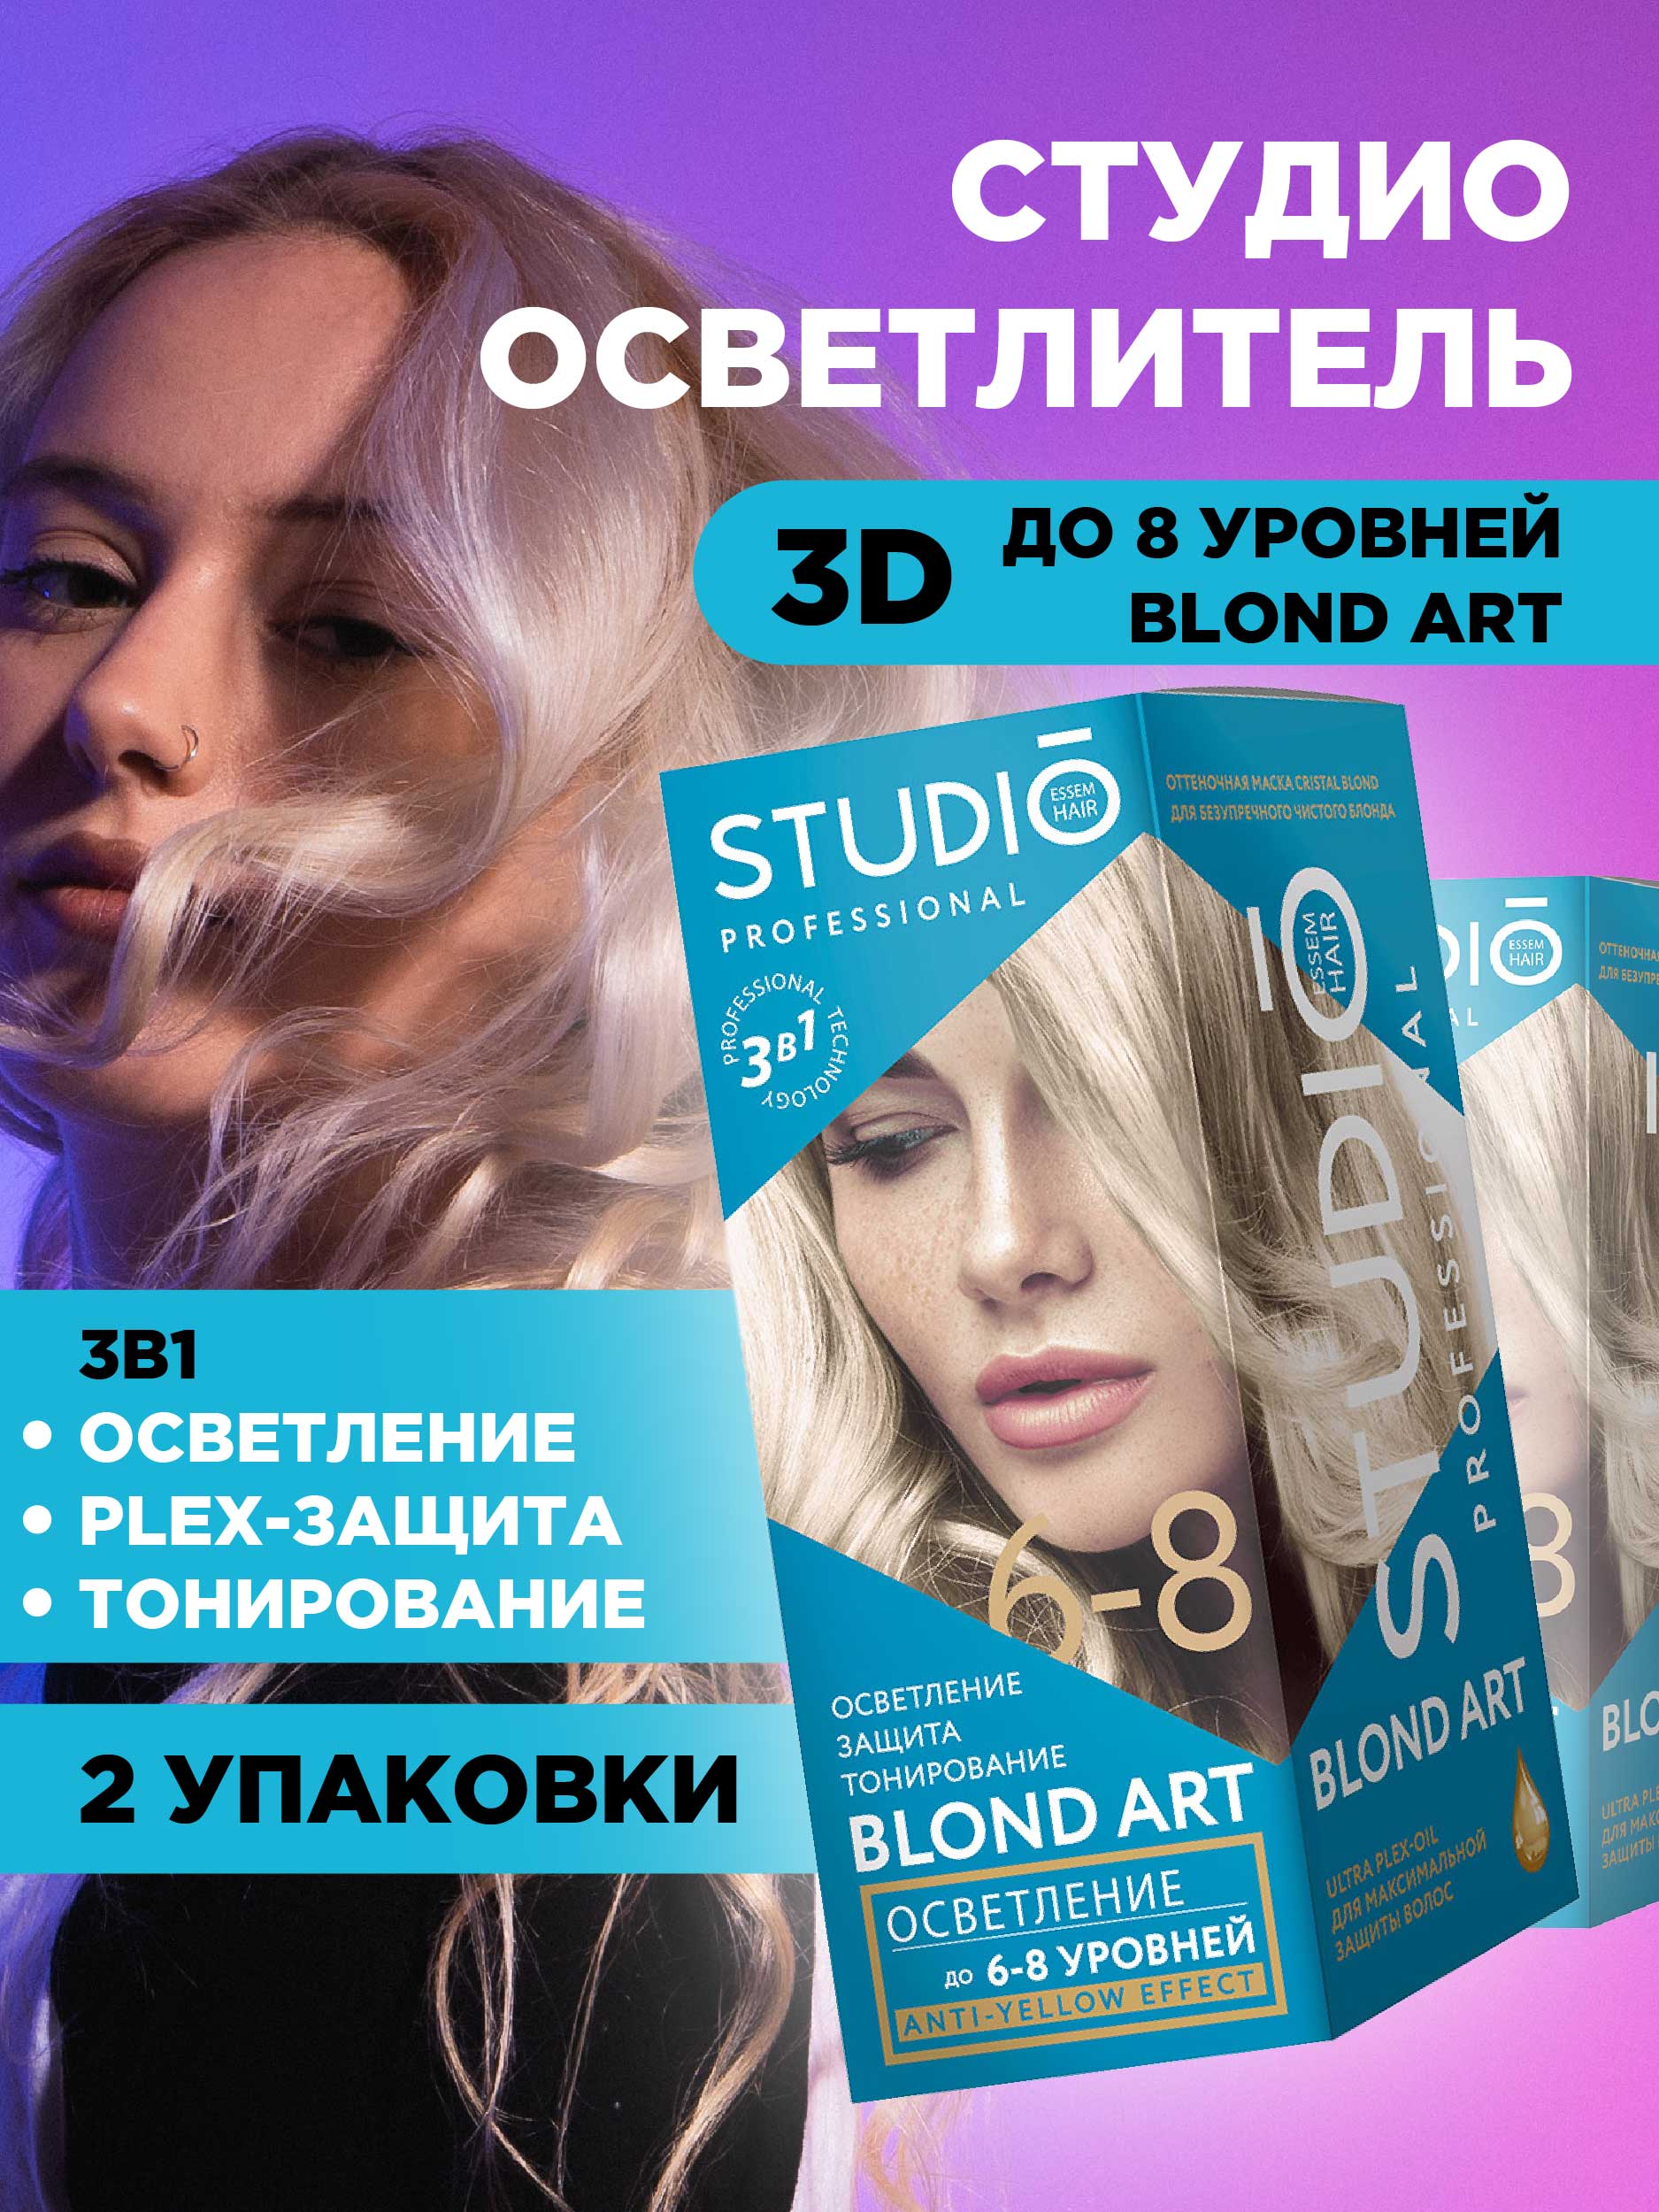 Осветлитель для волос Studio Professional 3D до 8 уровней 2*25гр 2шт осветлитель для волос studio professional 3d до 8 уровней 2 25гр 2шт